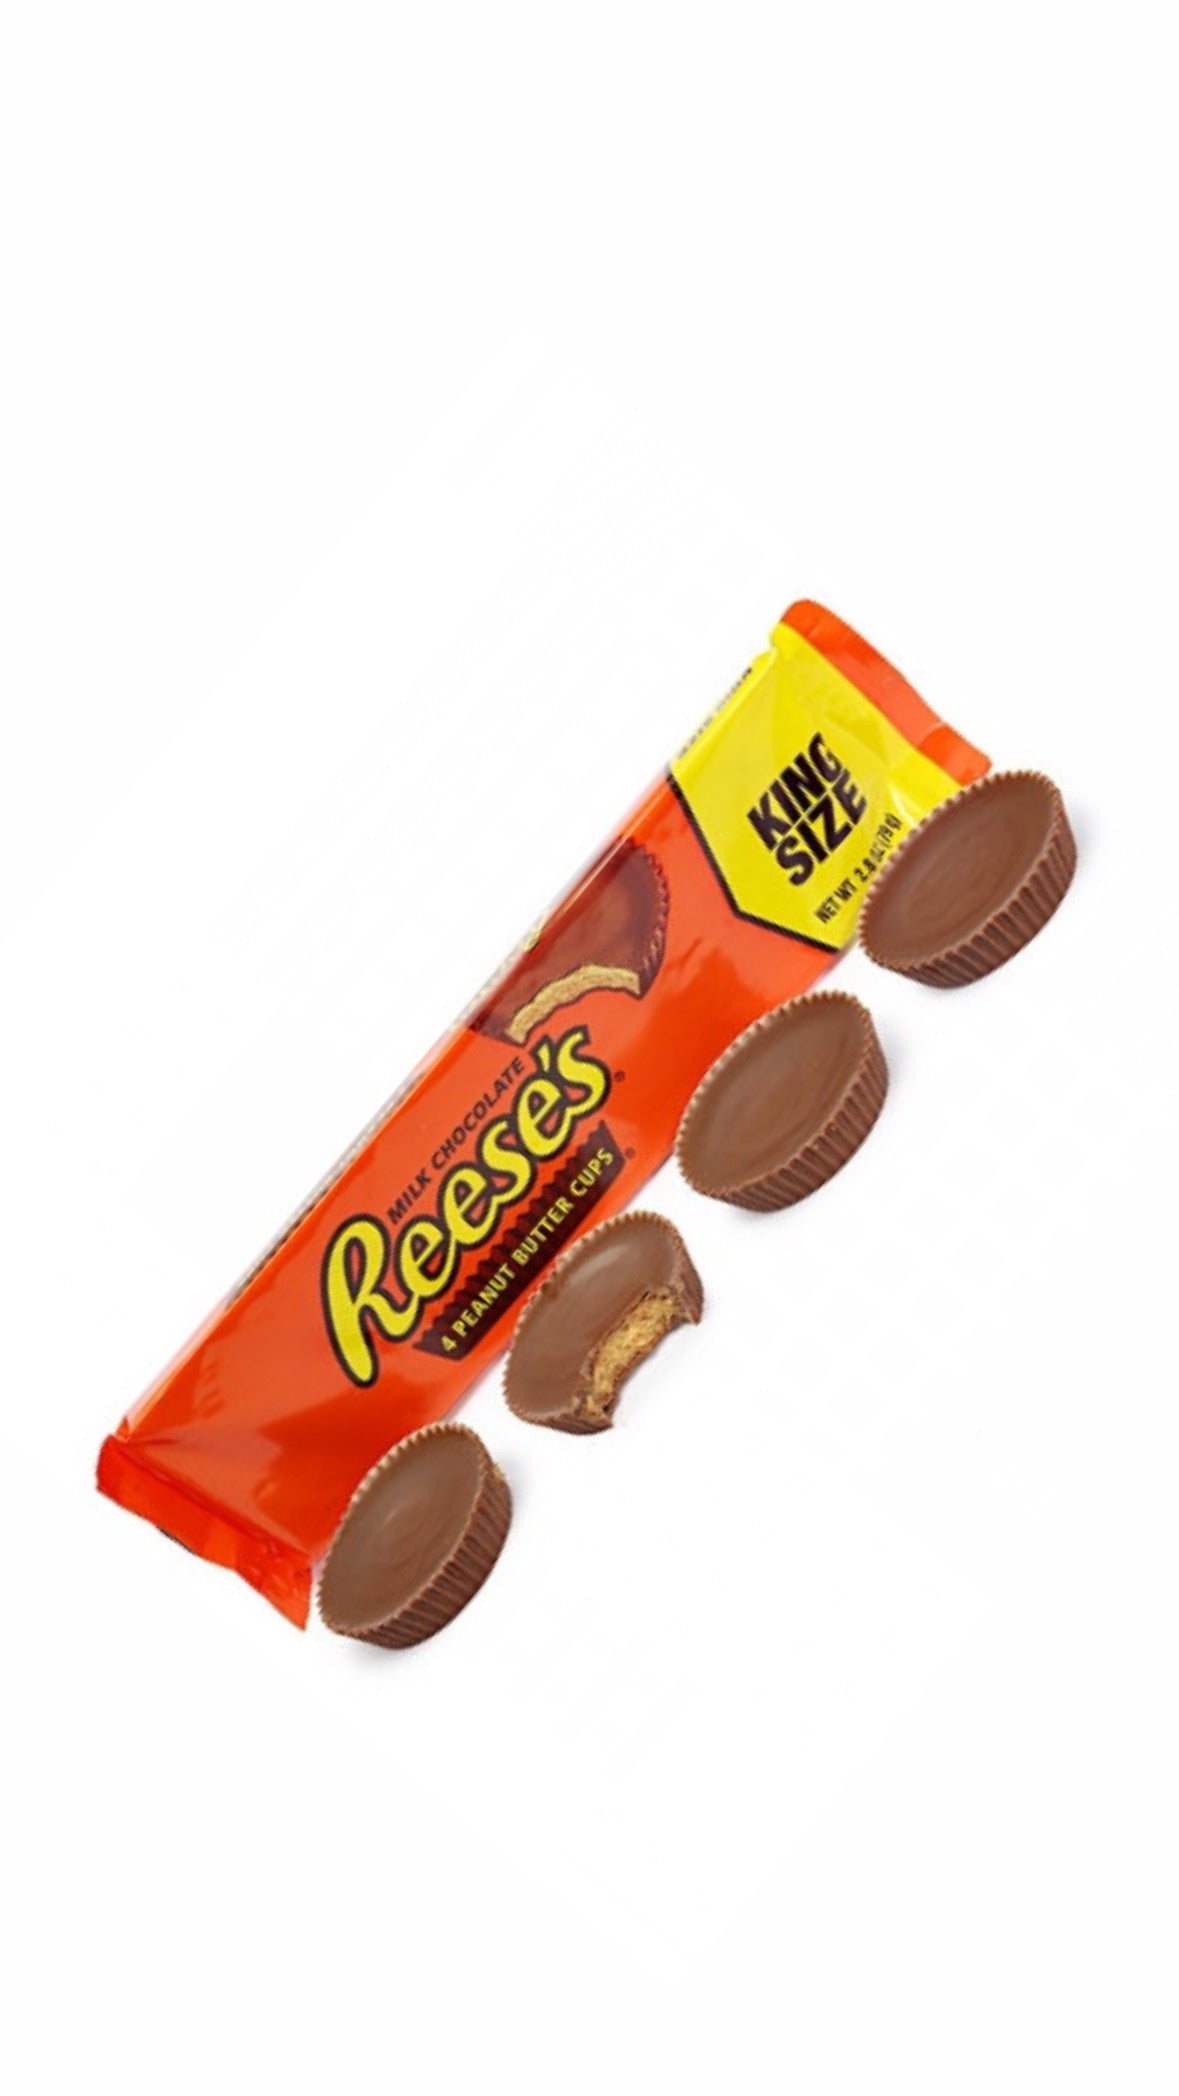 Reese's 4 Peanut Butter Cups King Size USA - Tartine di cioccolato con crema alle arachidi (79g) bundle cioccolato